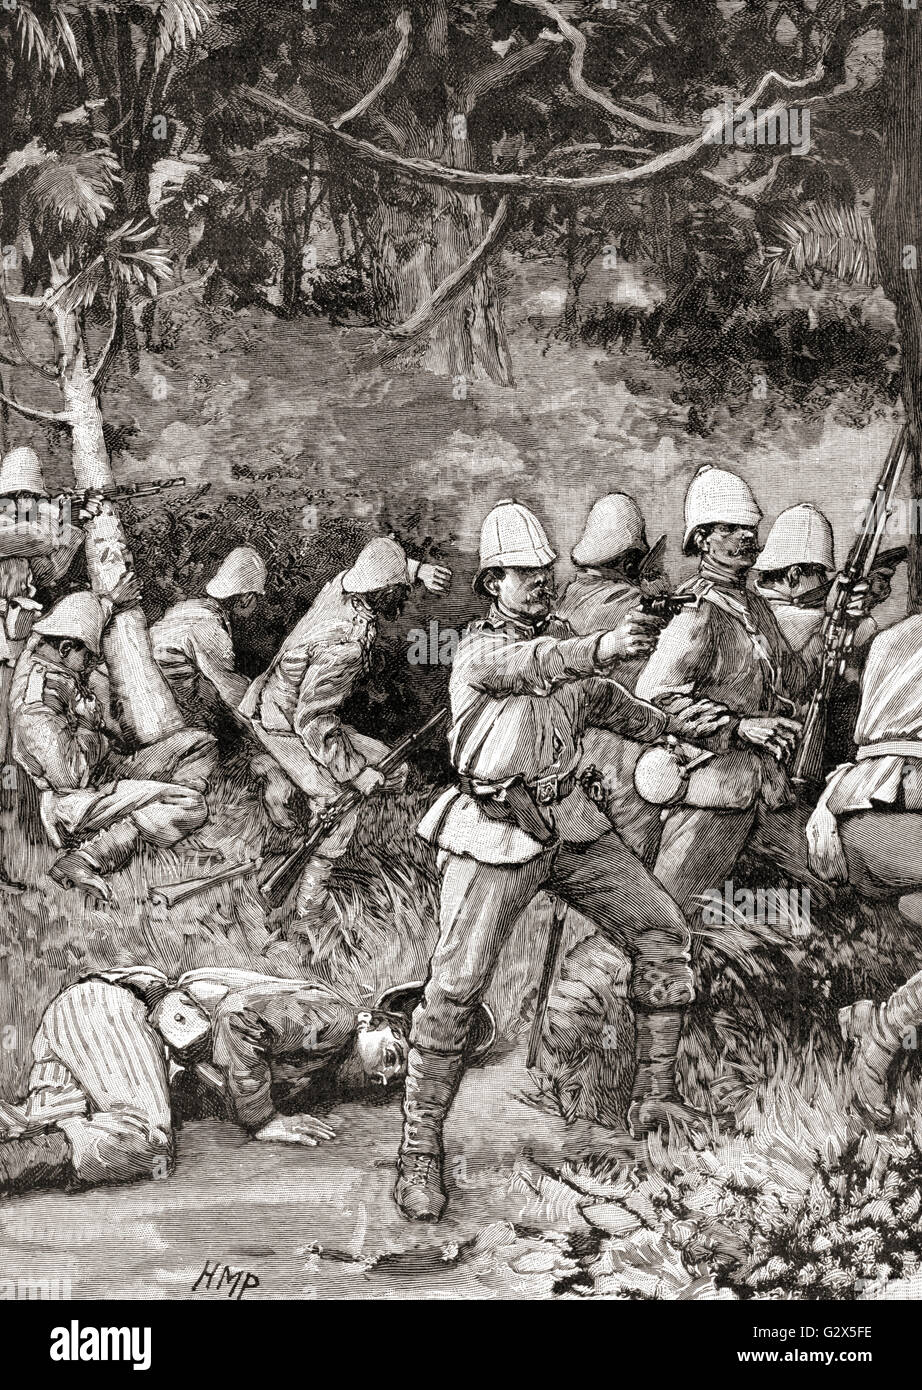 Die britische Armee Eingabe Coomassie, auch bekannt als Comassie oder Kumasi, während der dritte Anglo-Ashanti-Krieg im Jahre 1873. Stockfoto